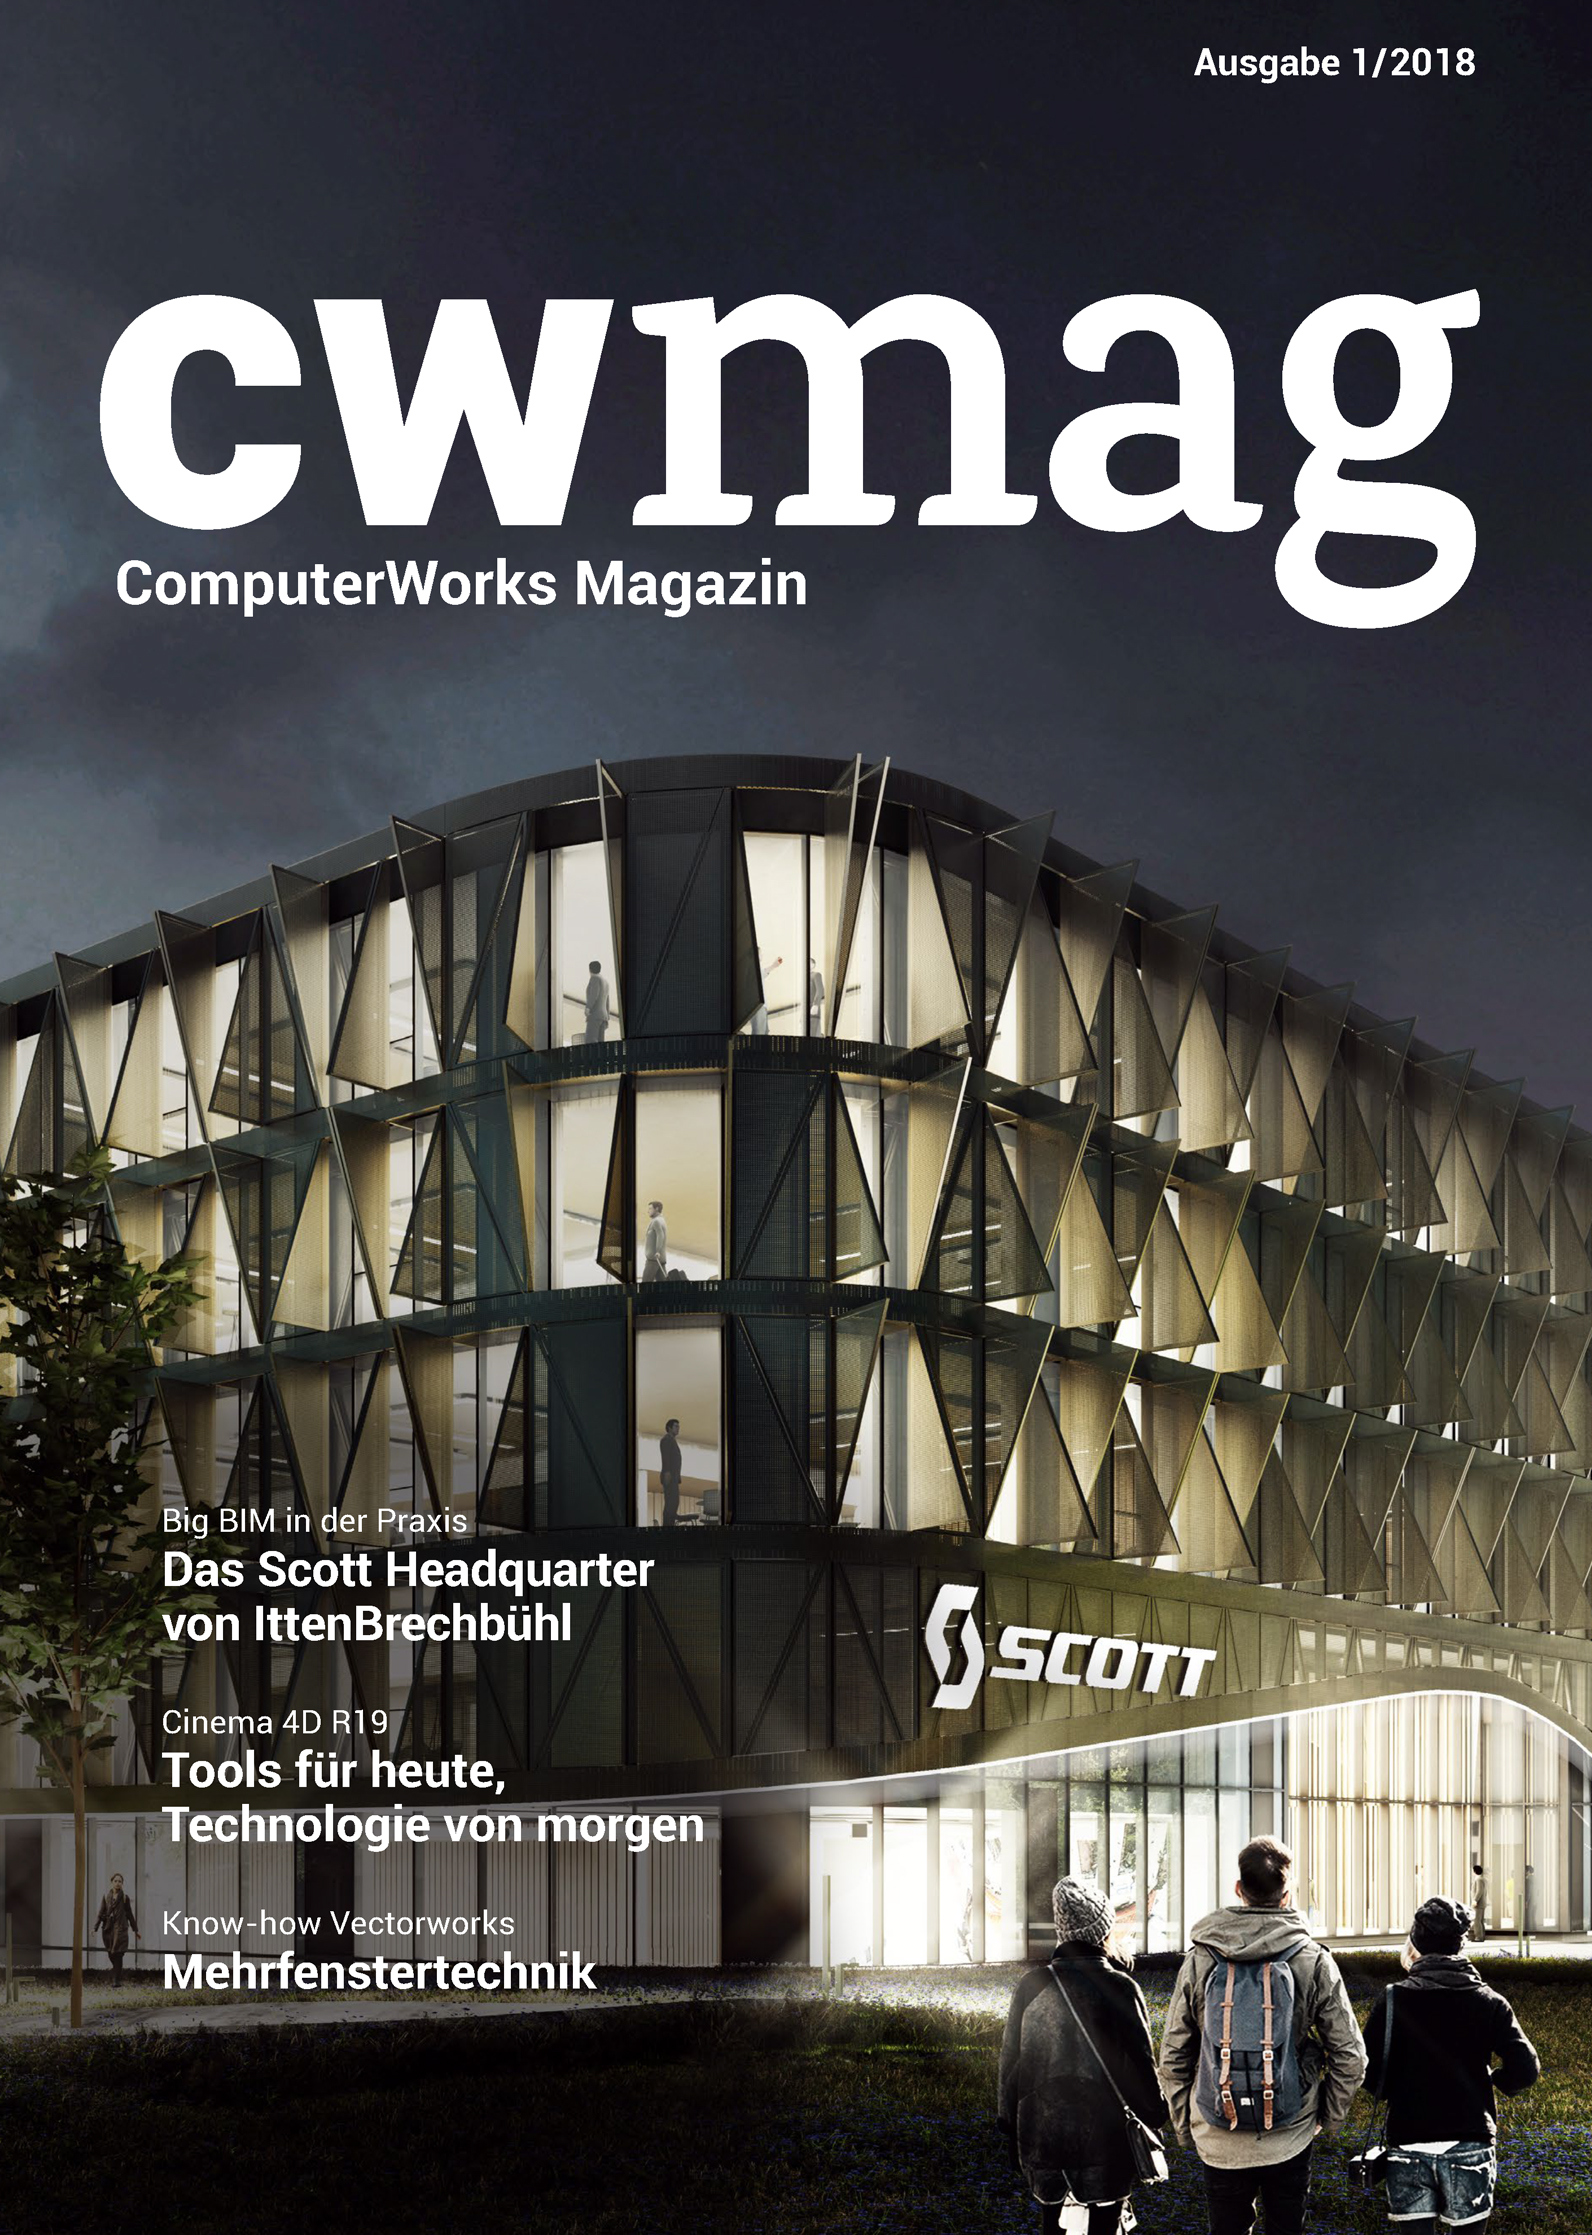 cwmag ComputerWorks Magazin -Ausgabe 01/2018